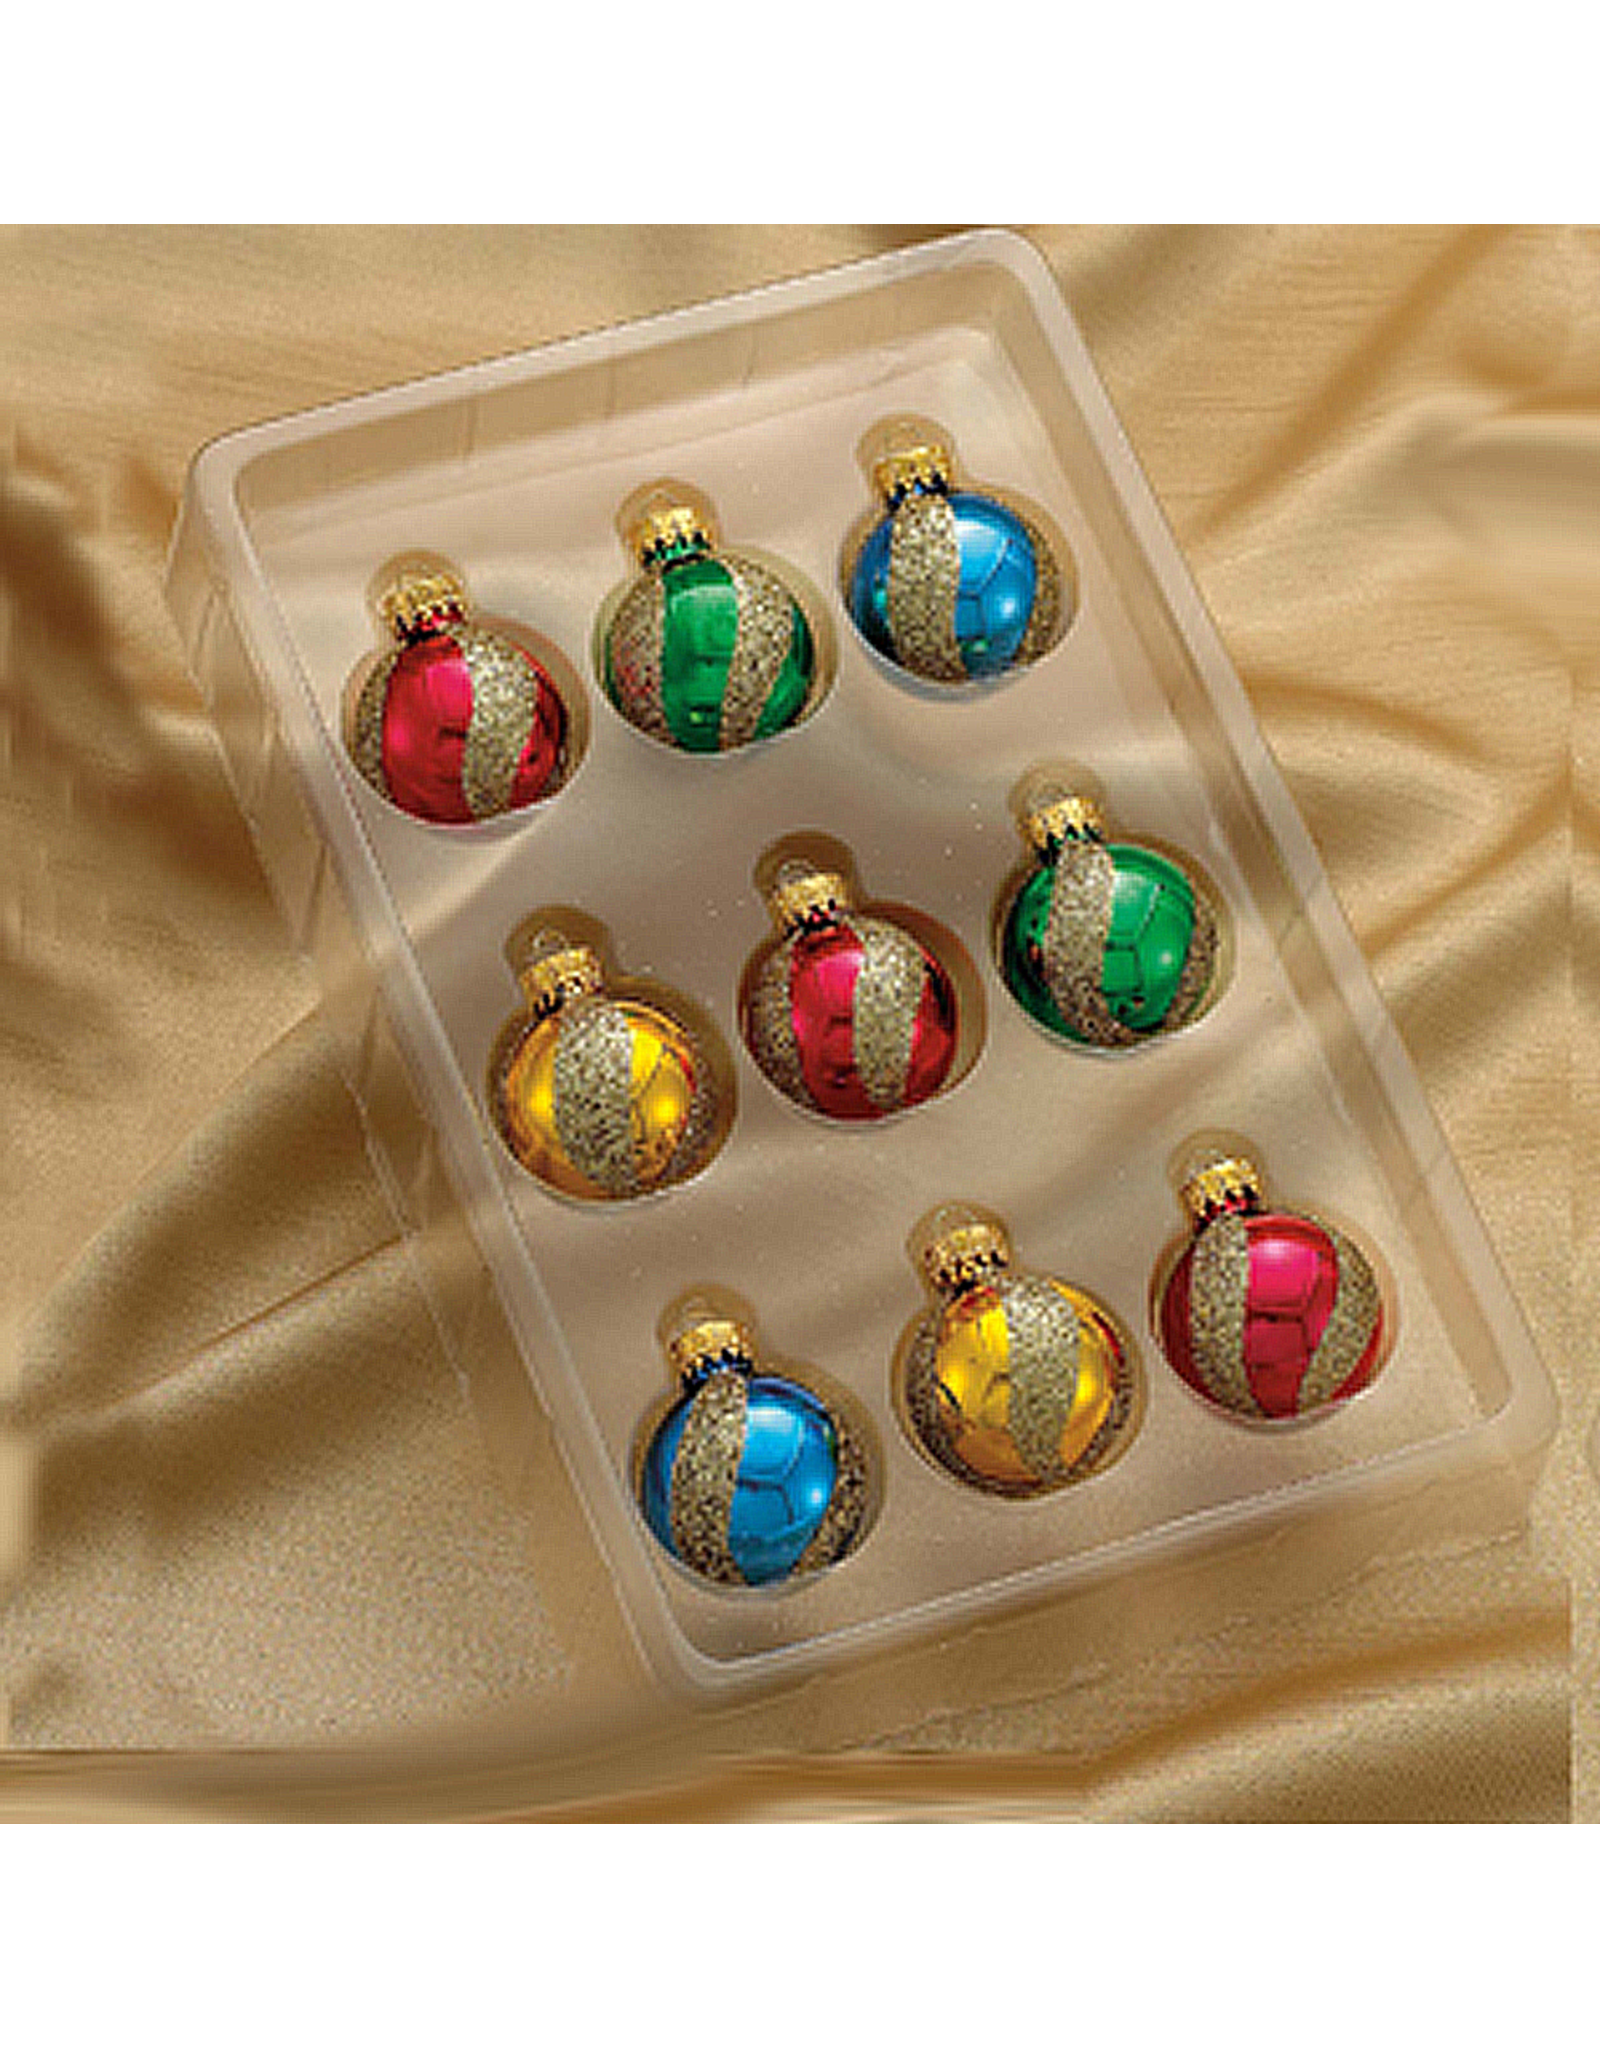 Kurt Adler Miniature Decorated Glass Ball Ornaments 35MM 9pk Swirl